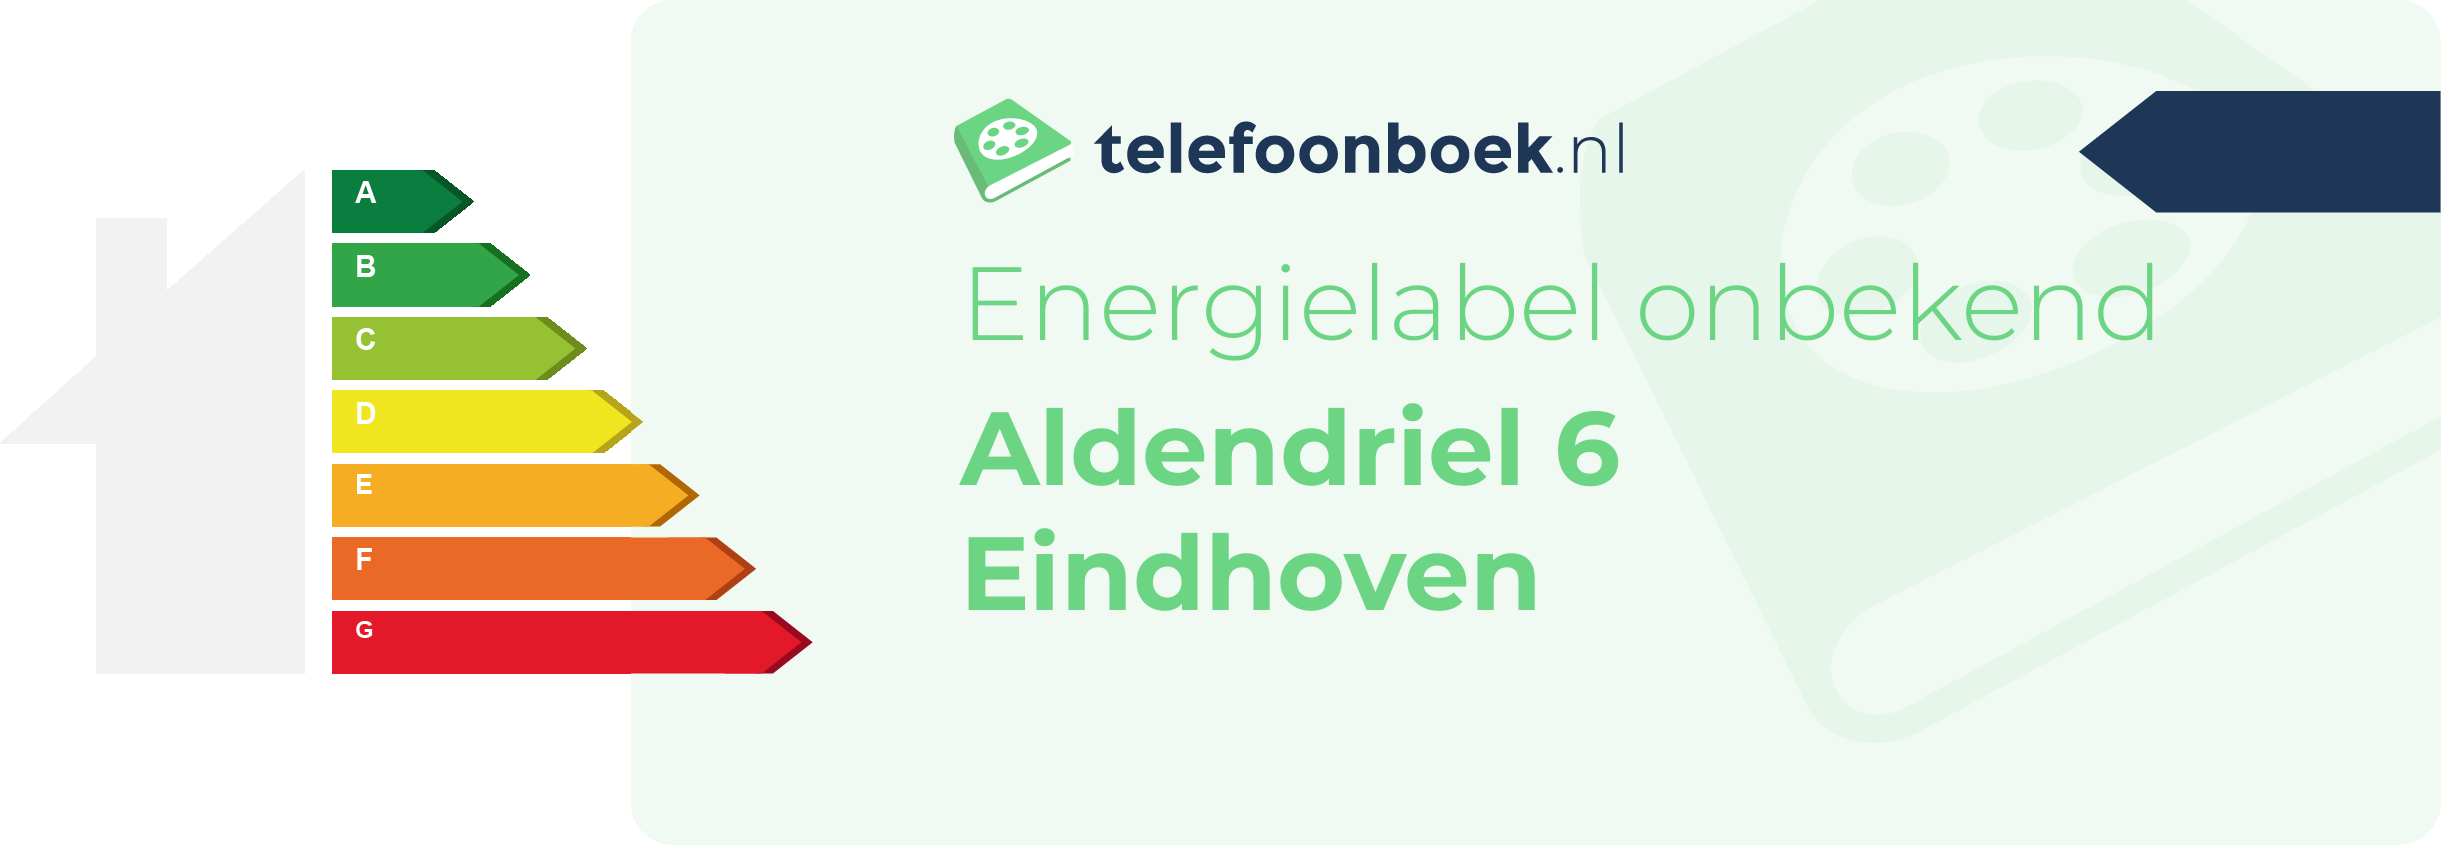 Energielabel Aldendriel 6 Eindhoven